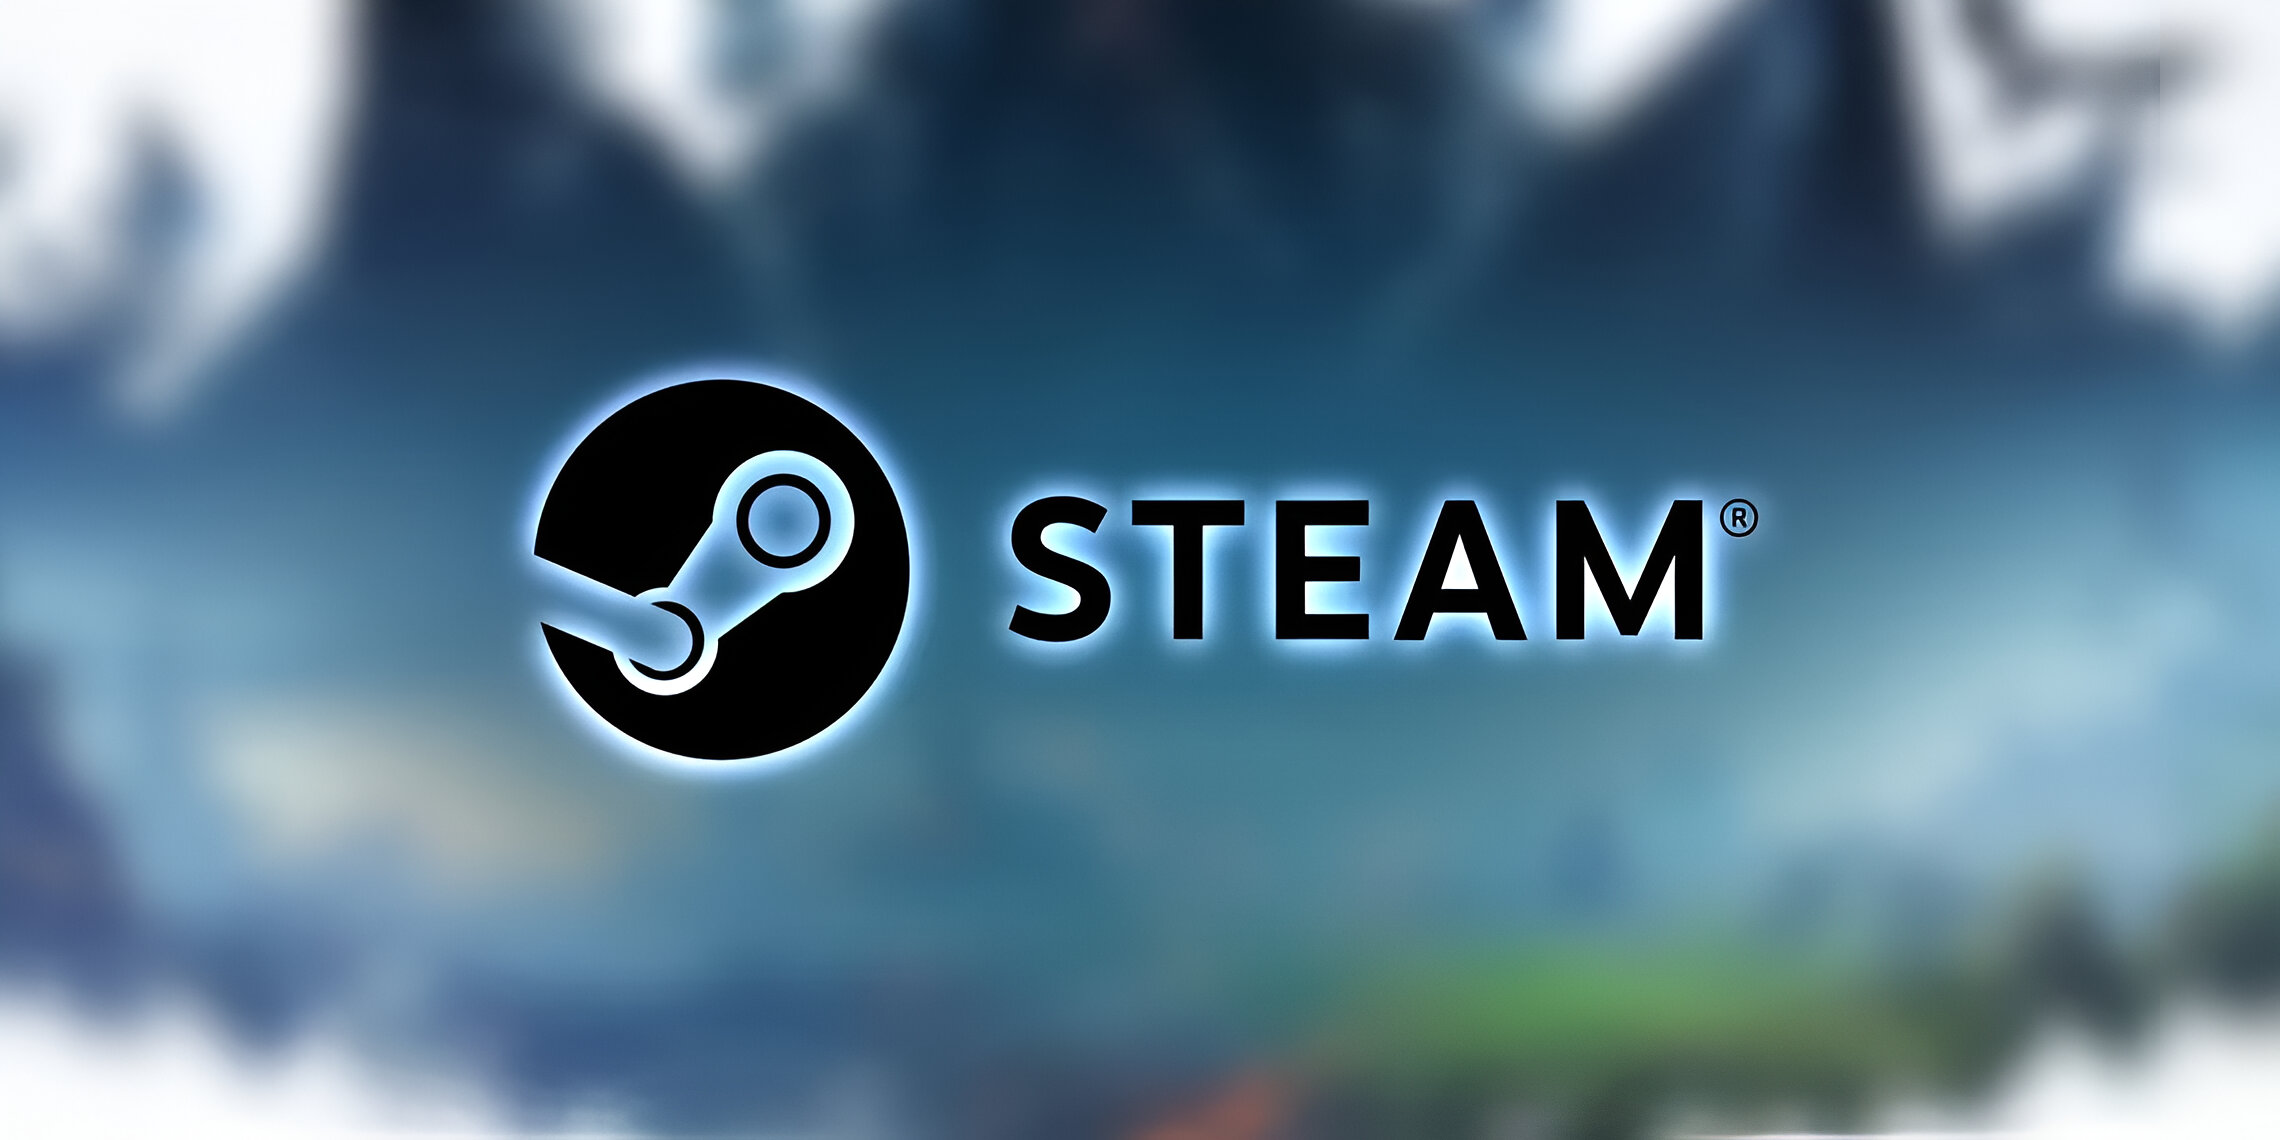 Steam đang tặng miễn phí trò chơi được đánh giá cao năm 2014